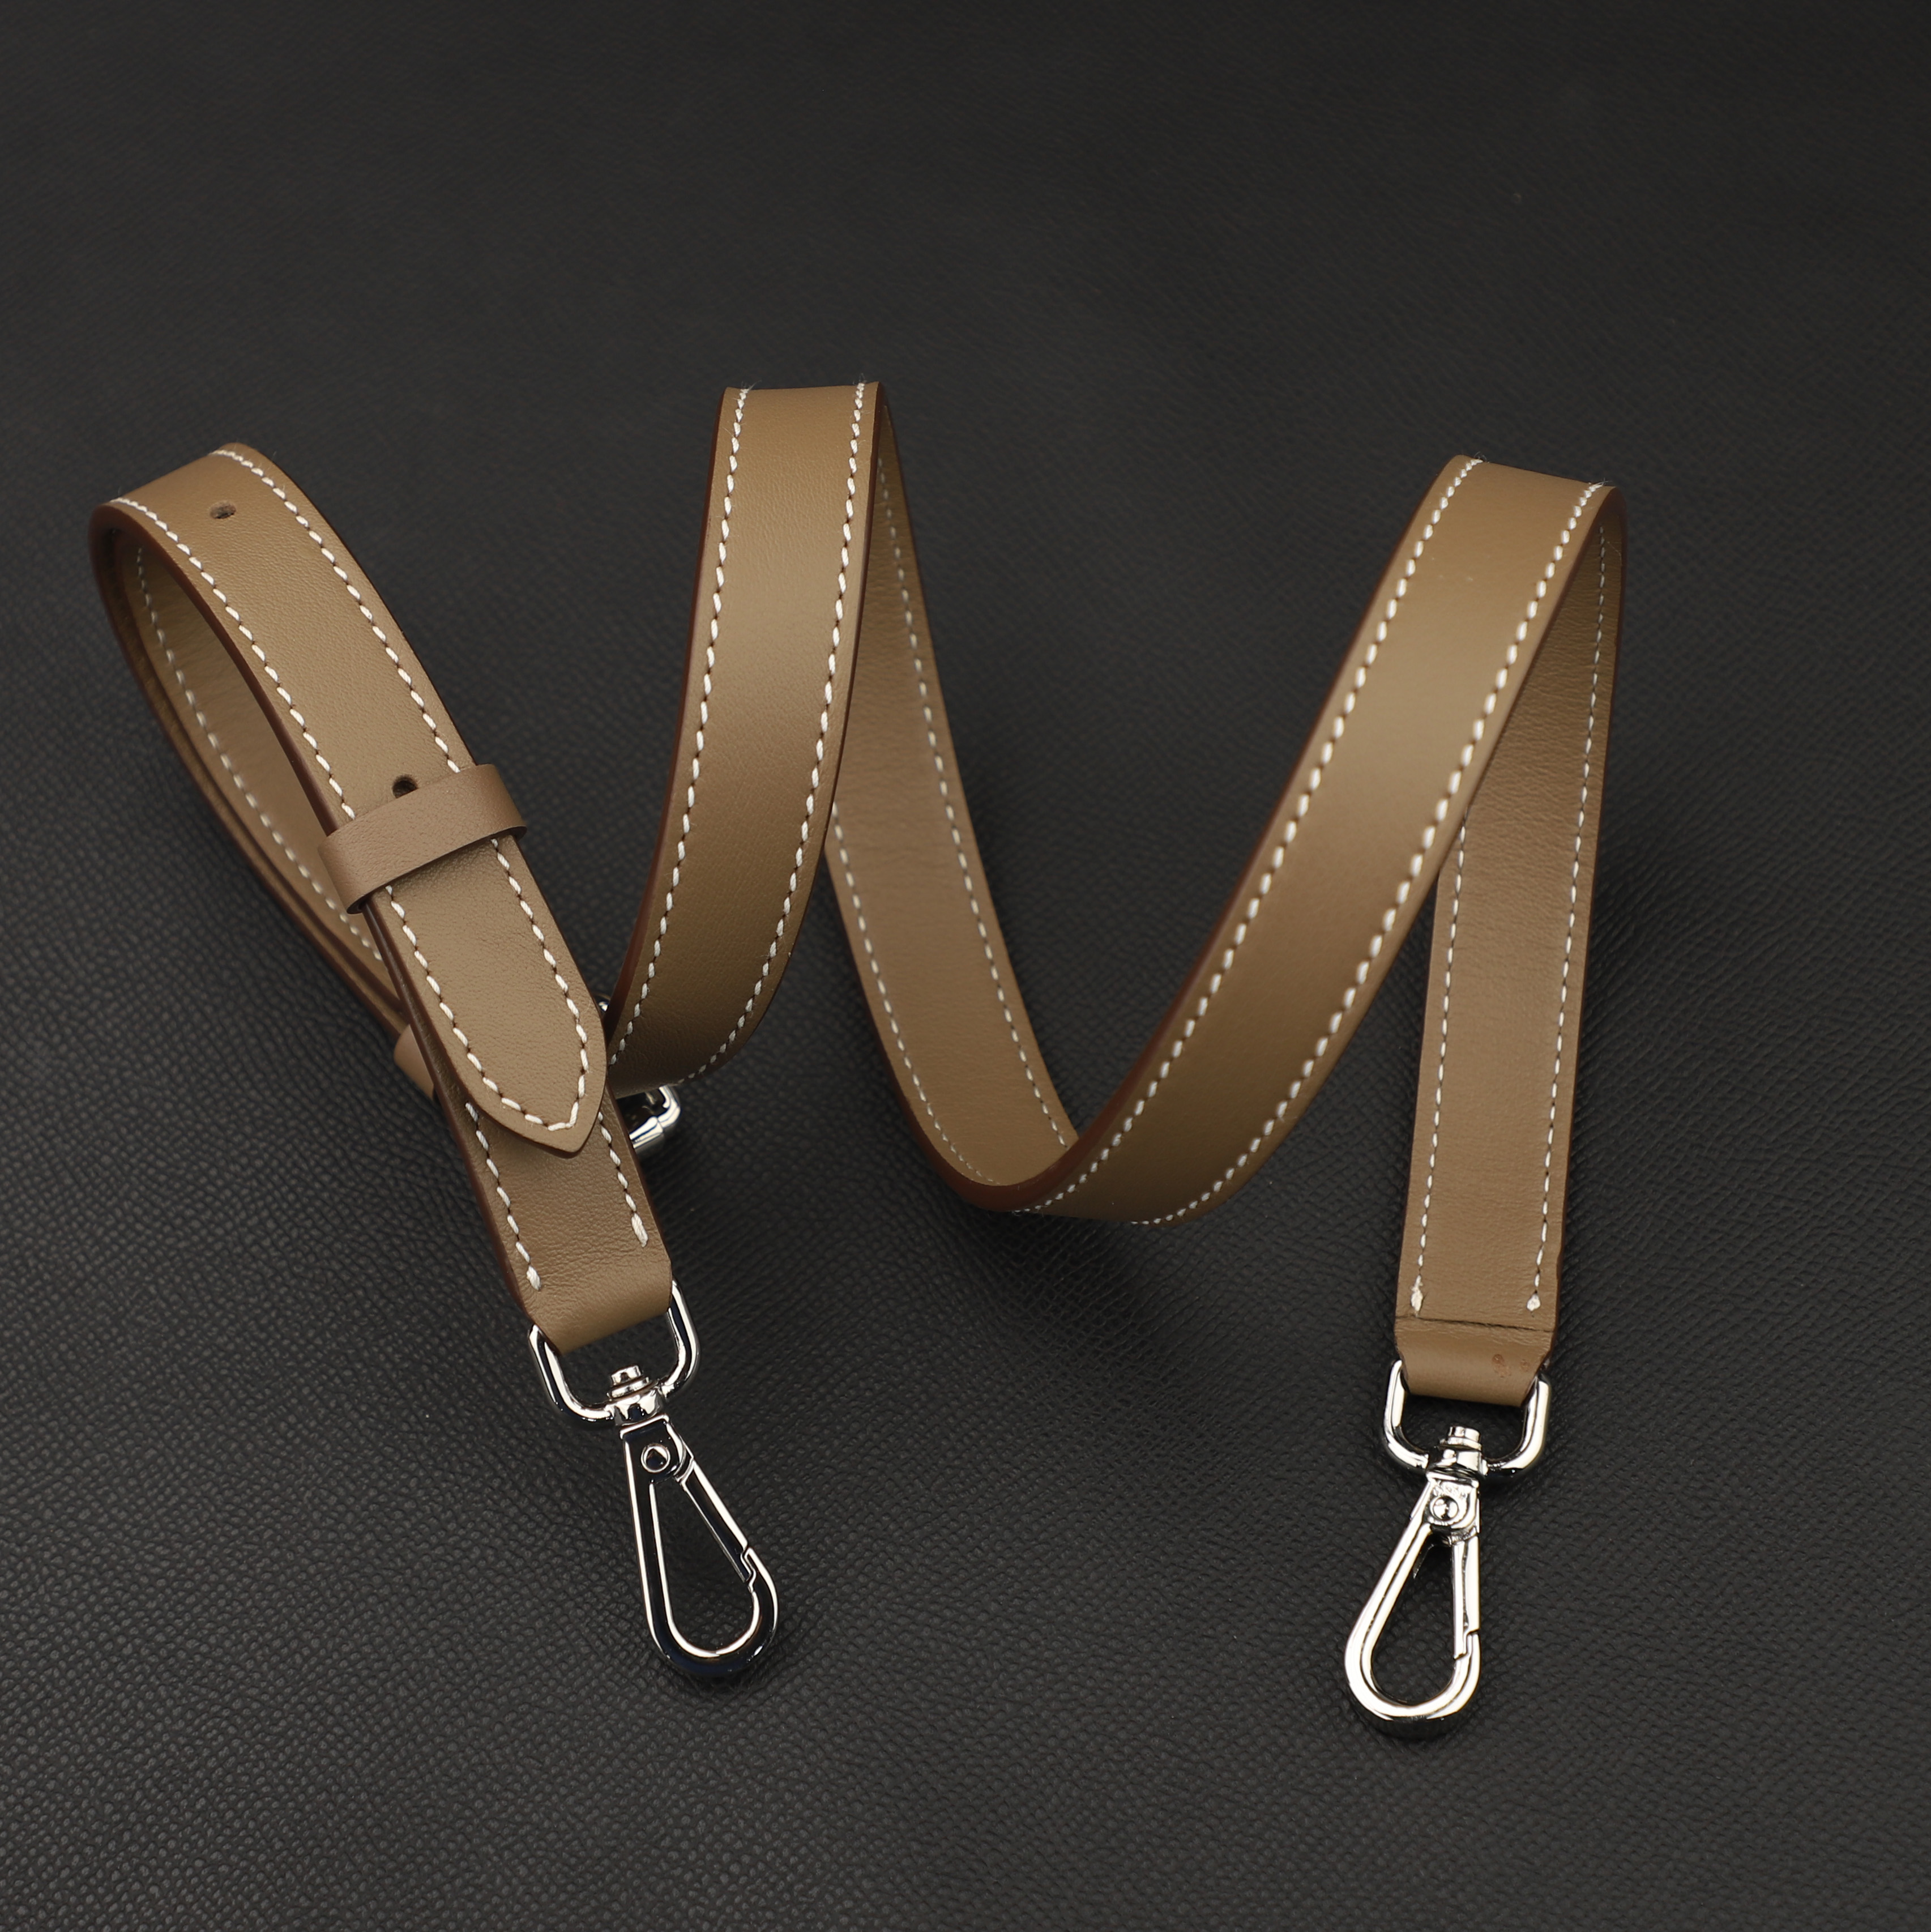 18mm Vachetta Leather Adjustable Bag Strap Crossbody Bag Strap Shoulder Bag Strap